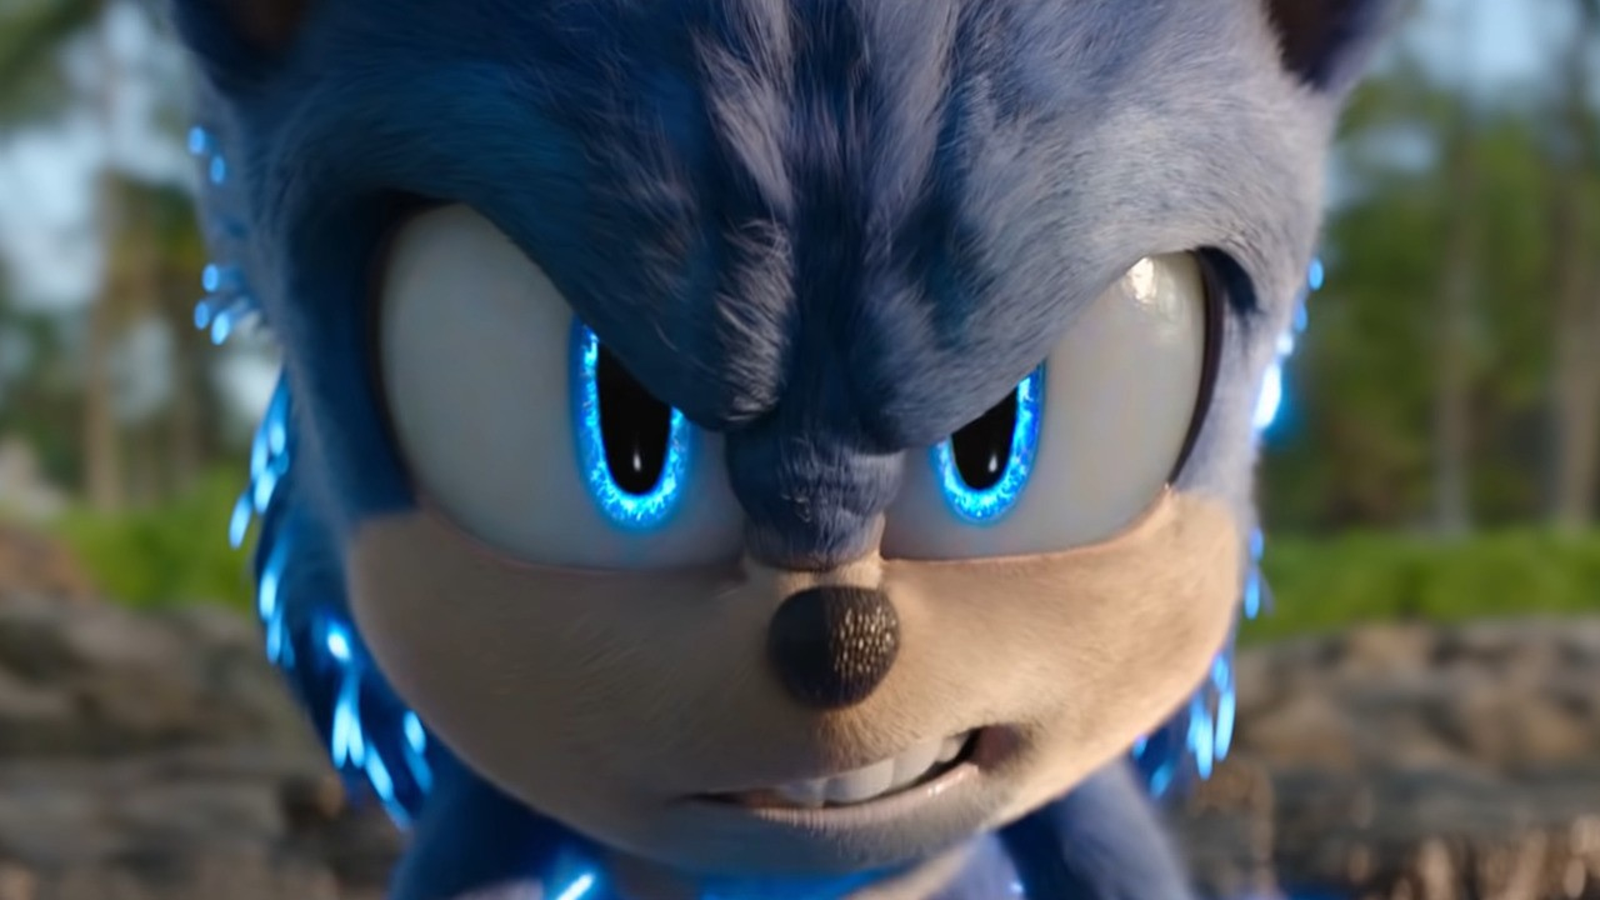 Sonic faz 30 anos em 2022 e Telecine vai exibir os dois filmes da saga -  Notícias de cinema - AdoroCinema